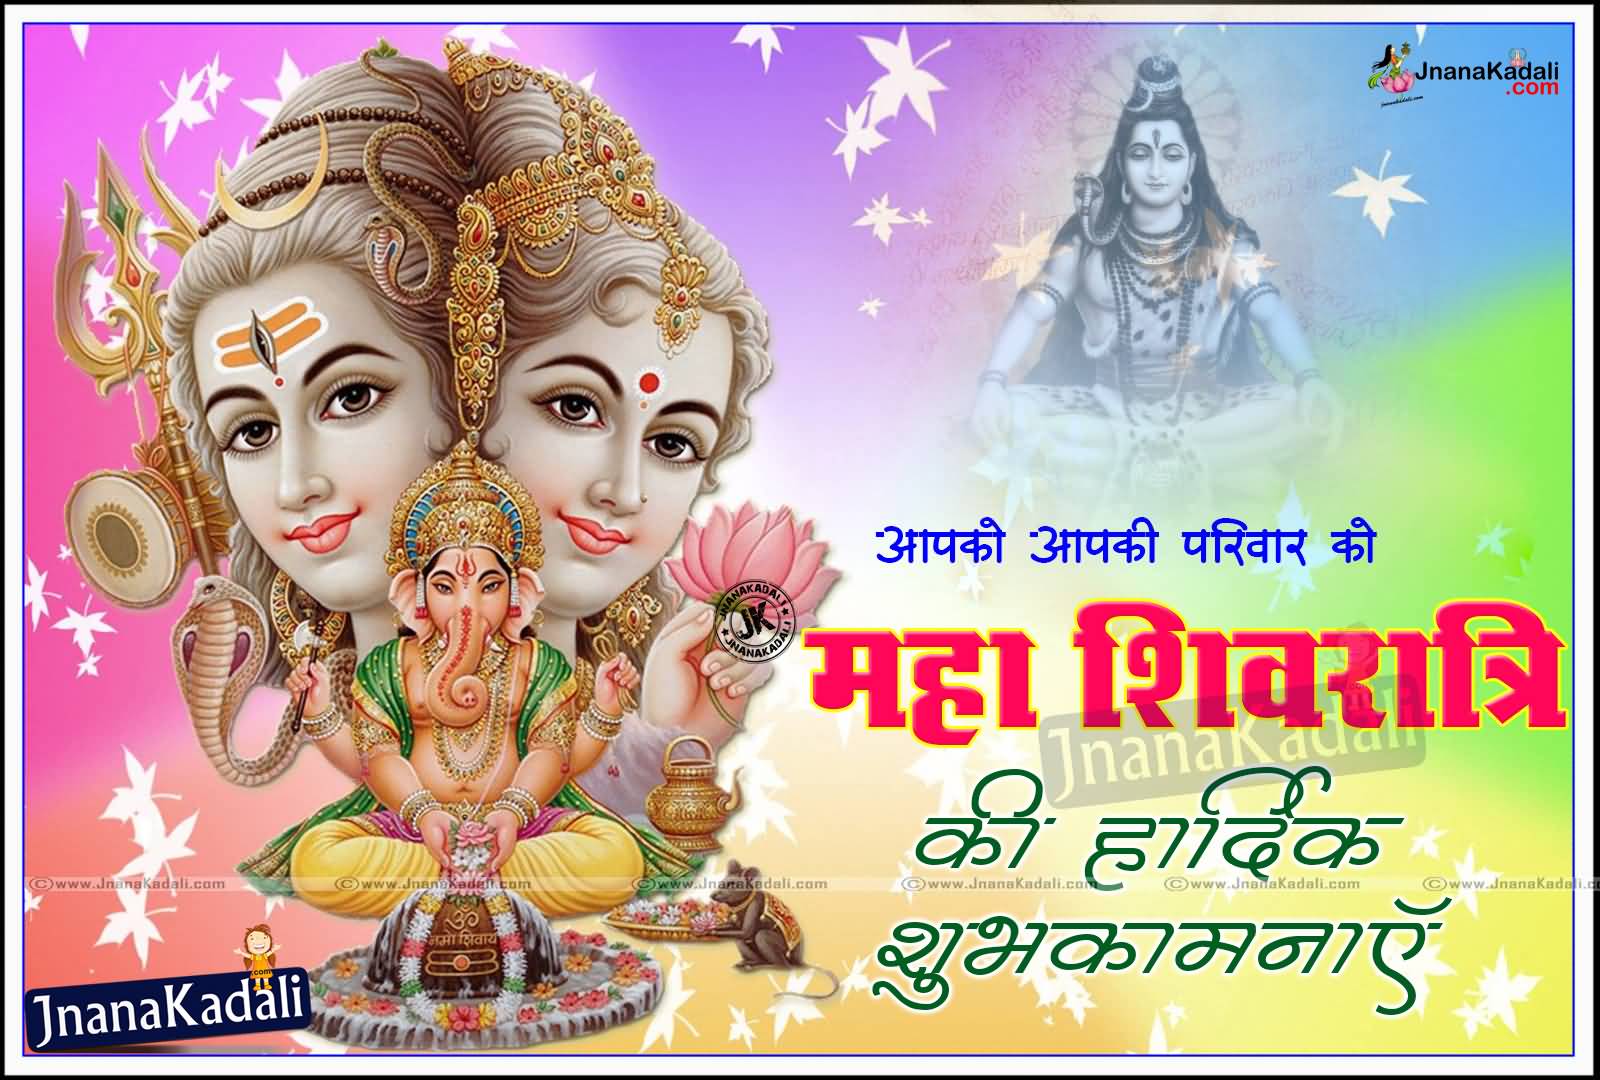 Maha Shivaratri Wishes To Your Family Greeting Card